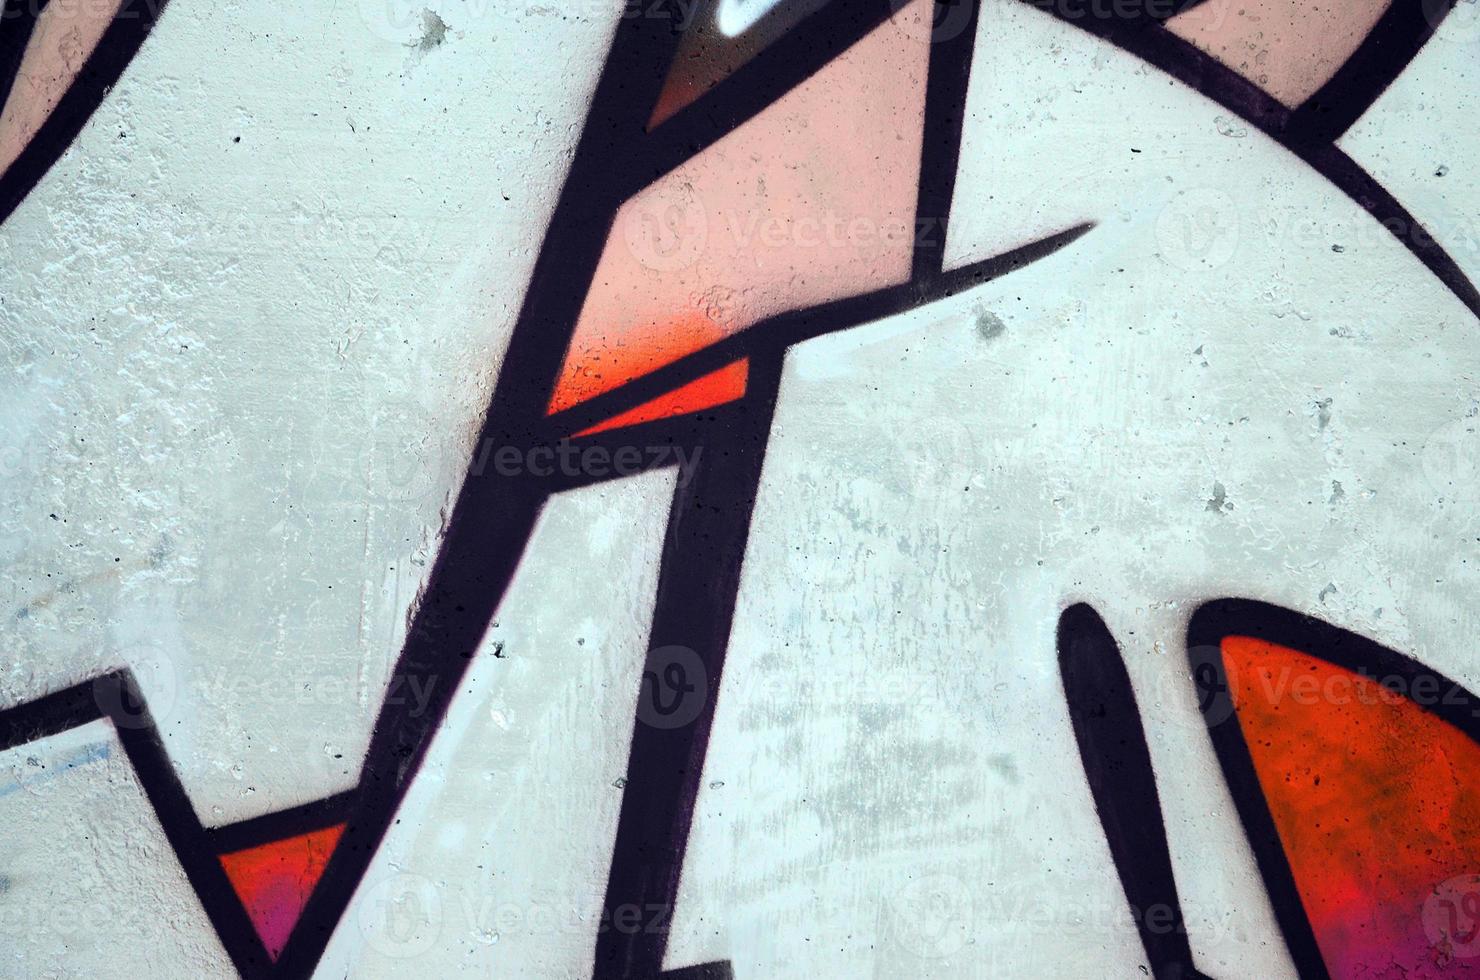 die alte mauer, bemalt in farbe graffiti zeichnung roter sprayfarben. Hintergrundbild zum Thema Zeichnen von Graffiti und Street Art foto